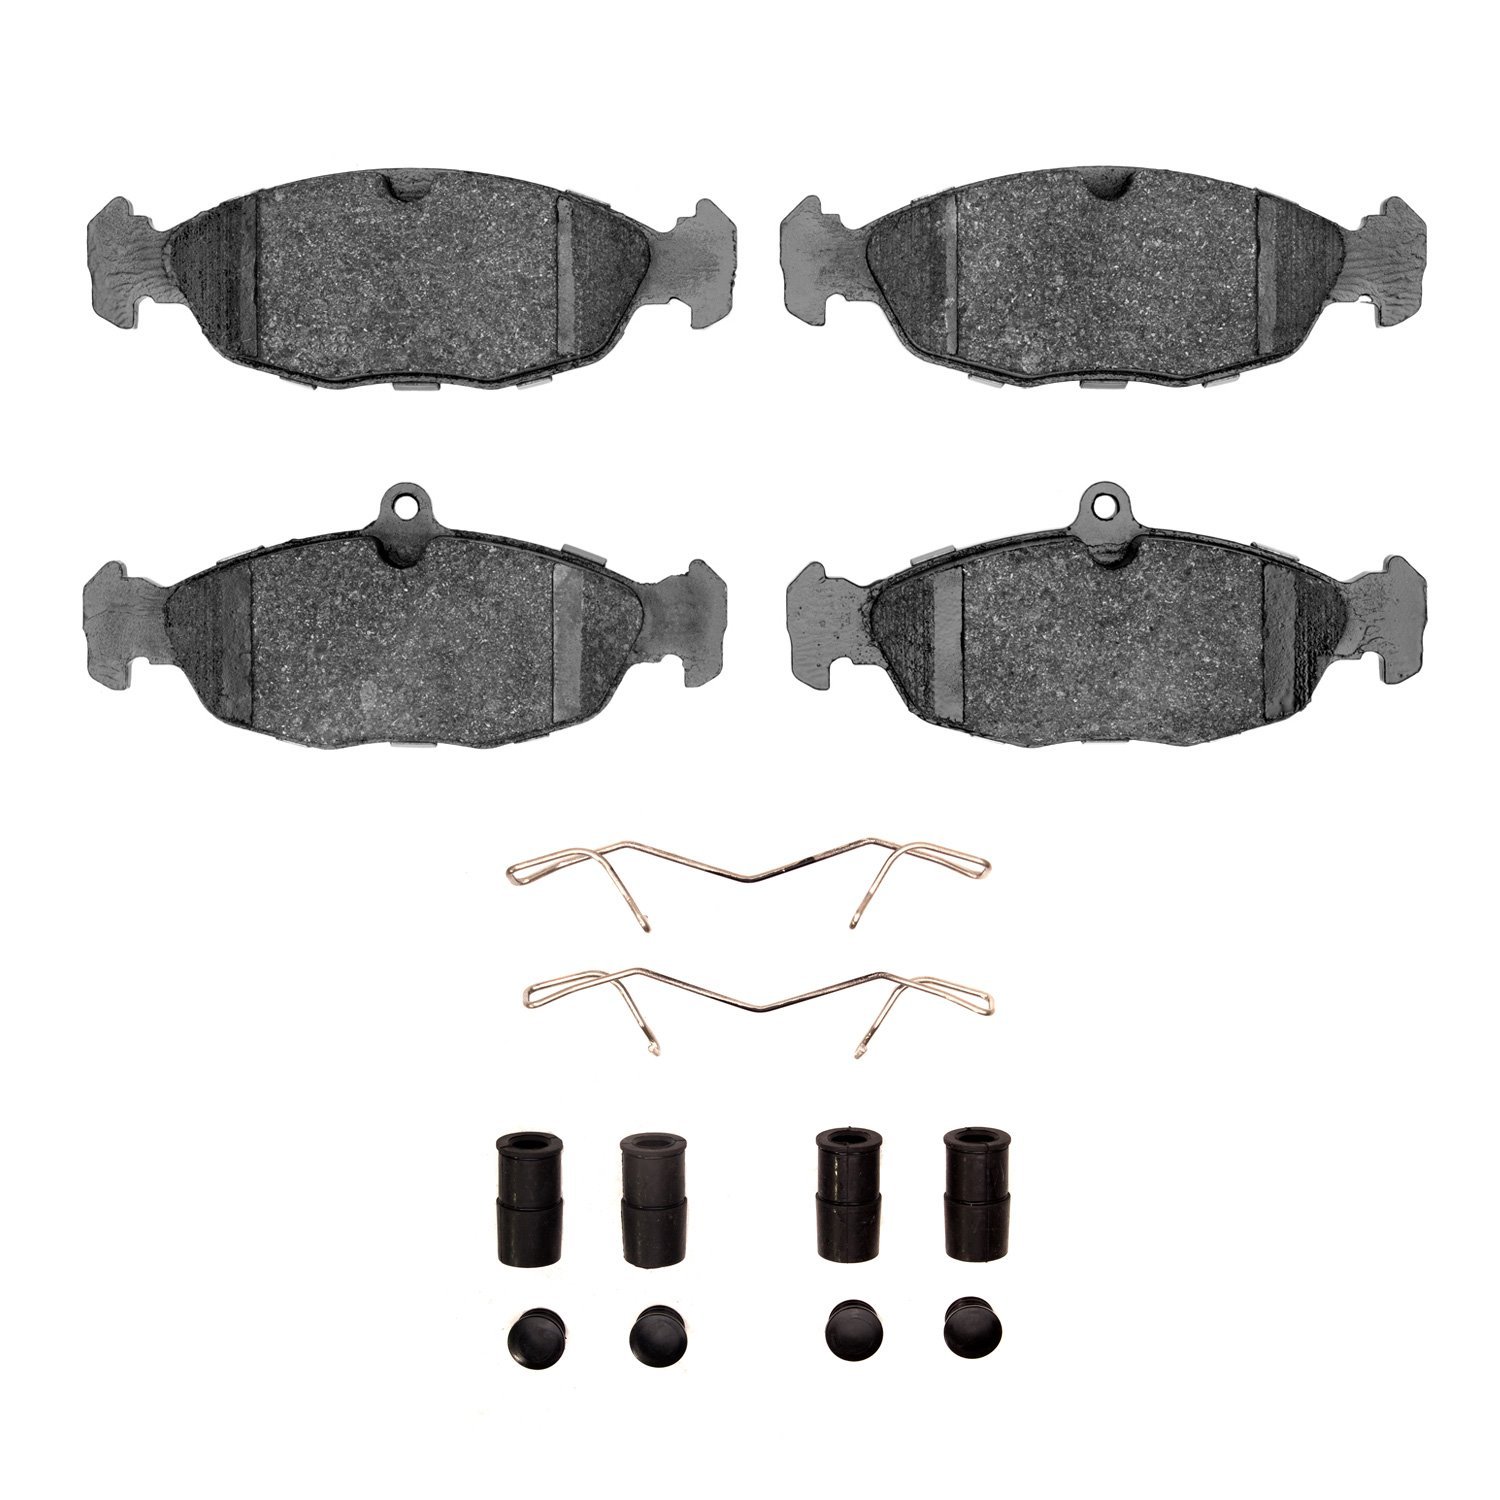 Ceramic Brake Pads & Hardware Kit, 1995-1999 Fits Multiple Makes/Models, Position: Front & Rear